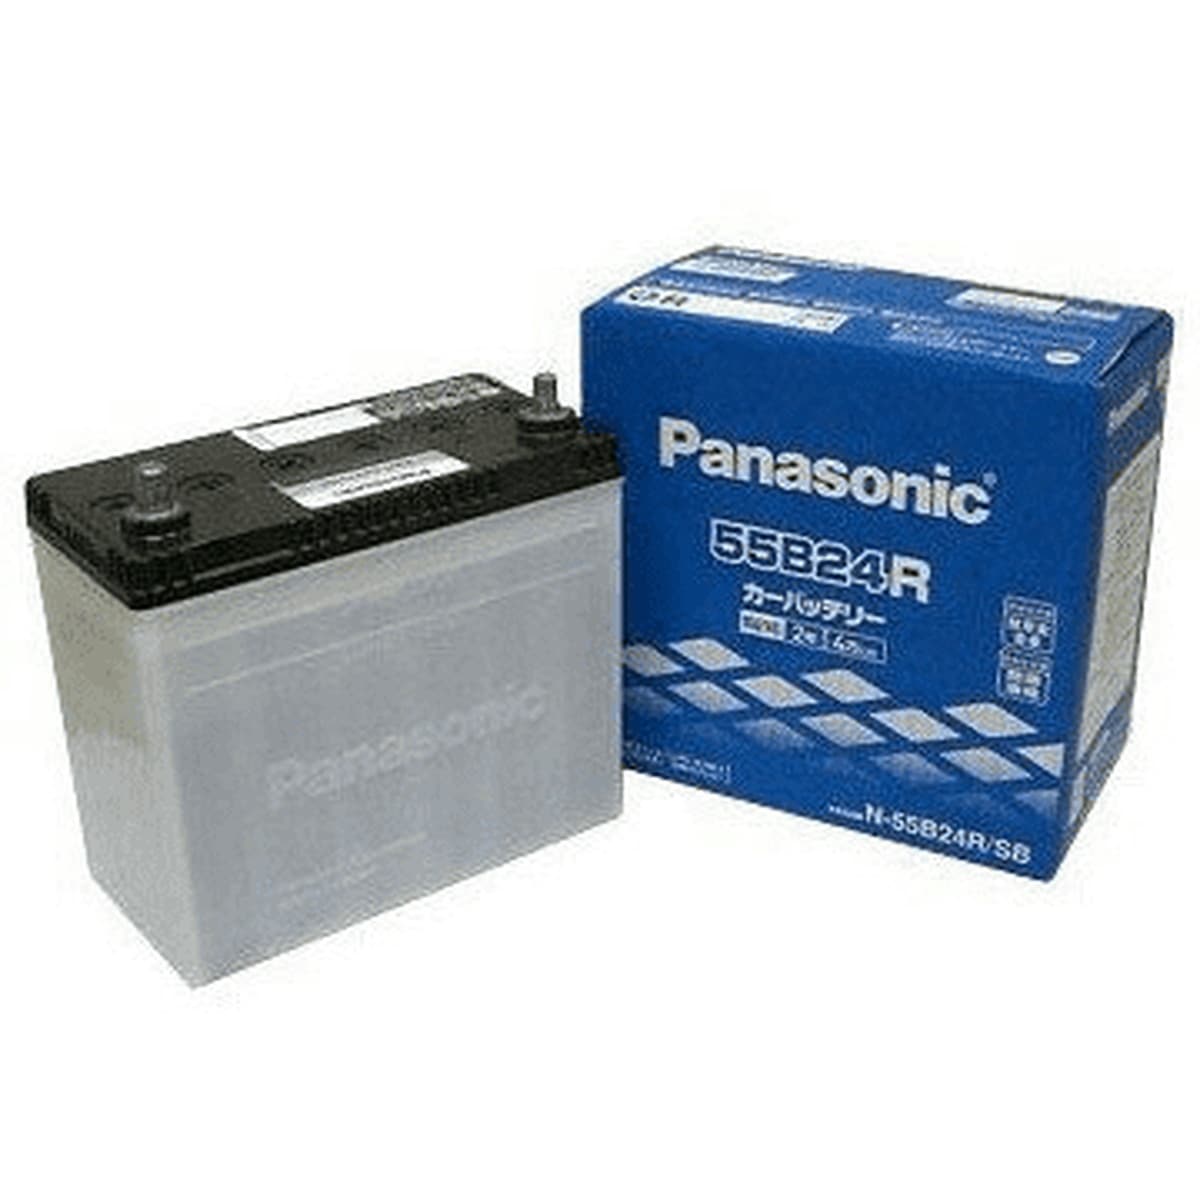 Panasonic N-60B19L/C8 ニッサン キックス 搭載(42B19L) PANASONIC カオス ブルーバッテリー